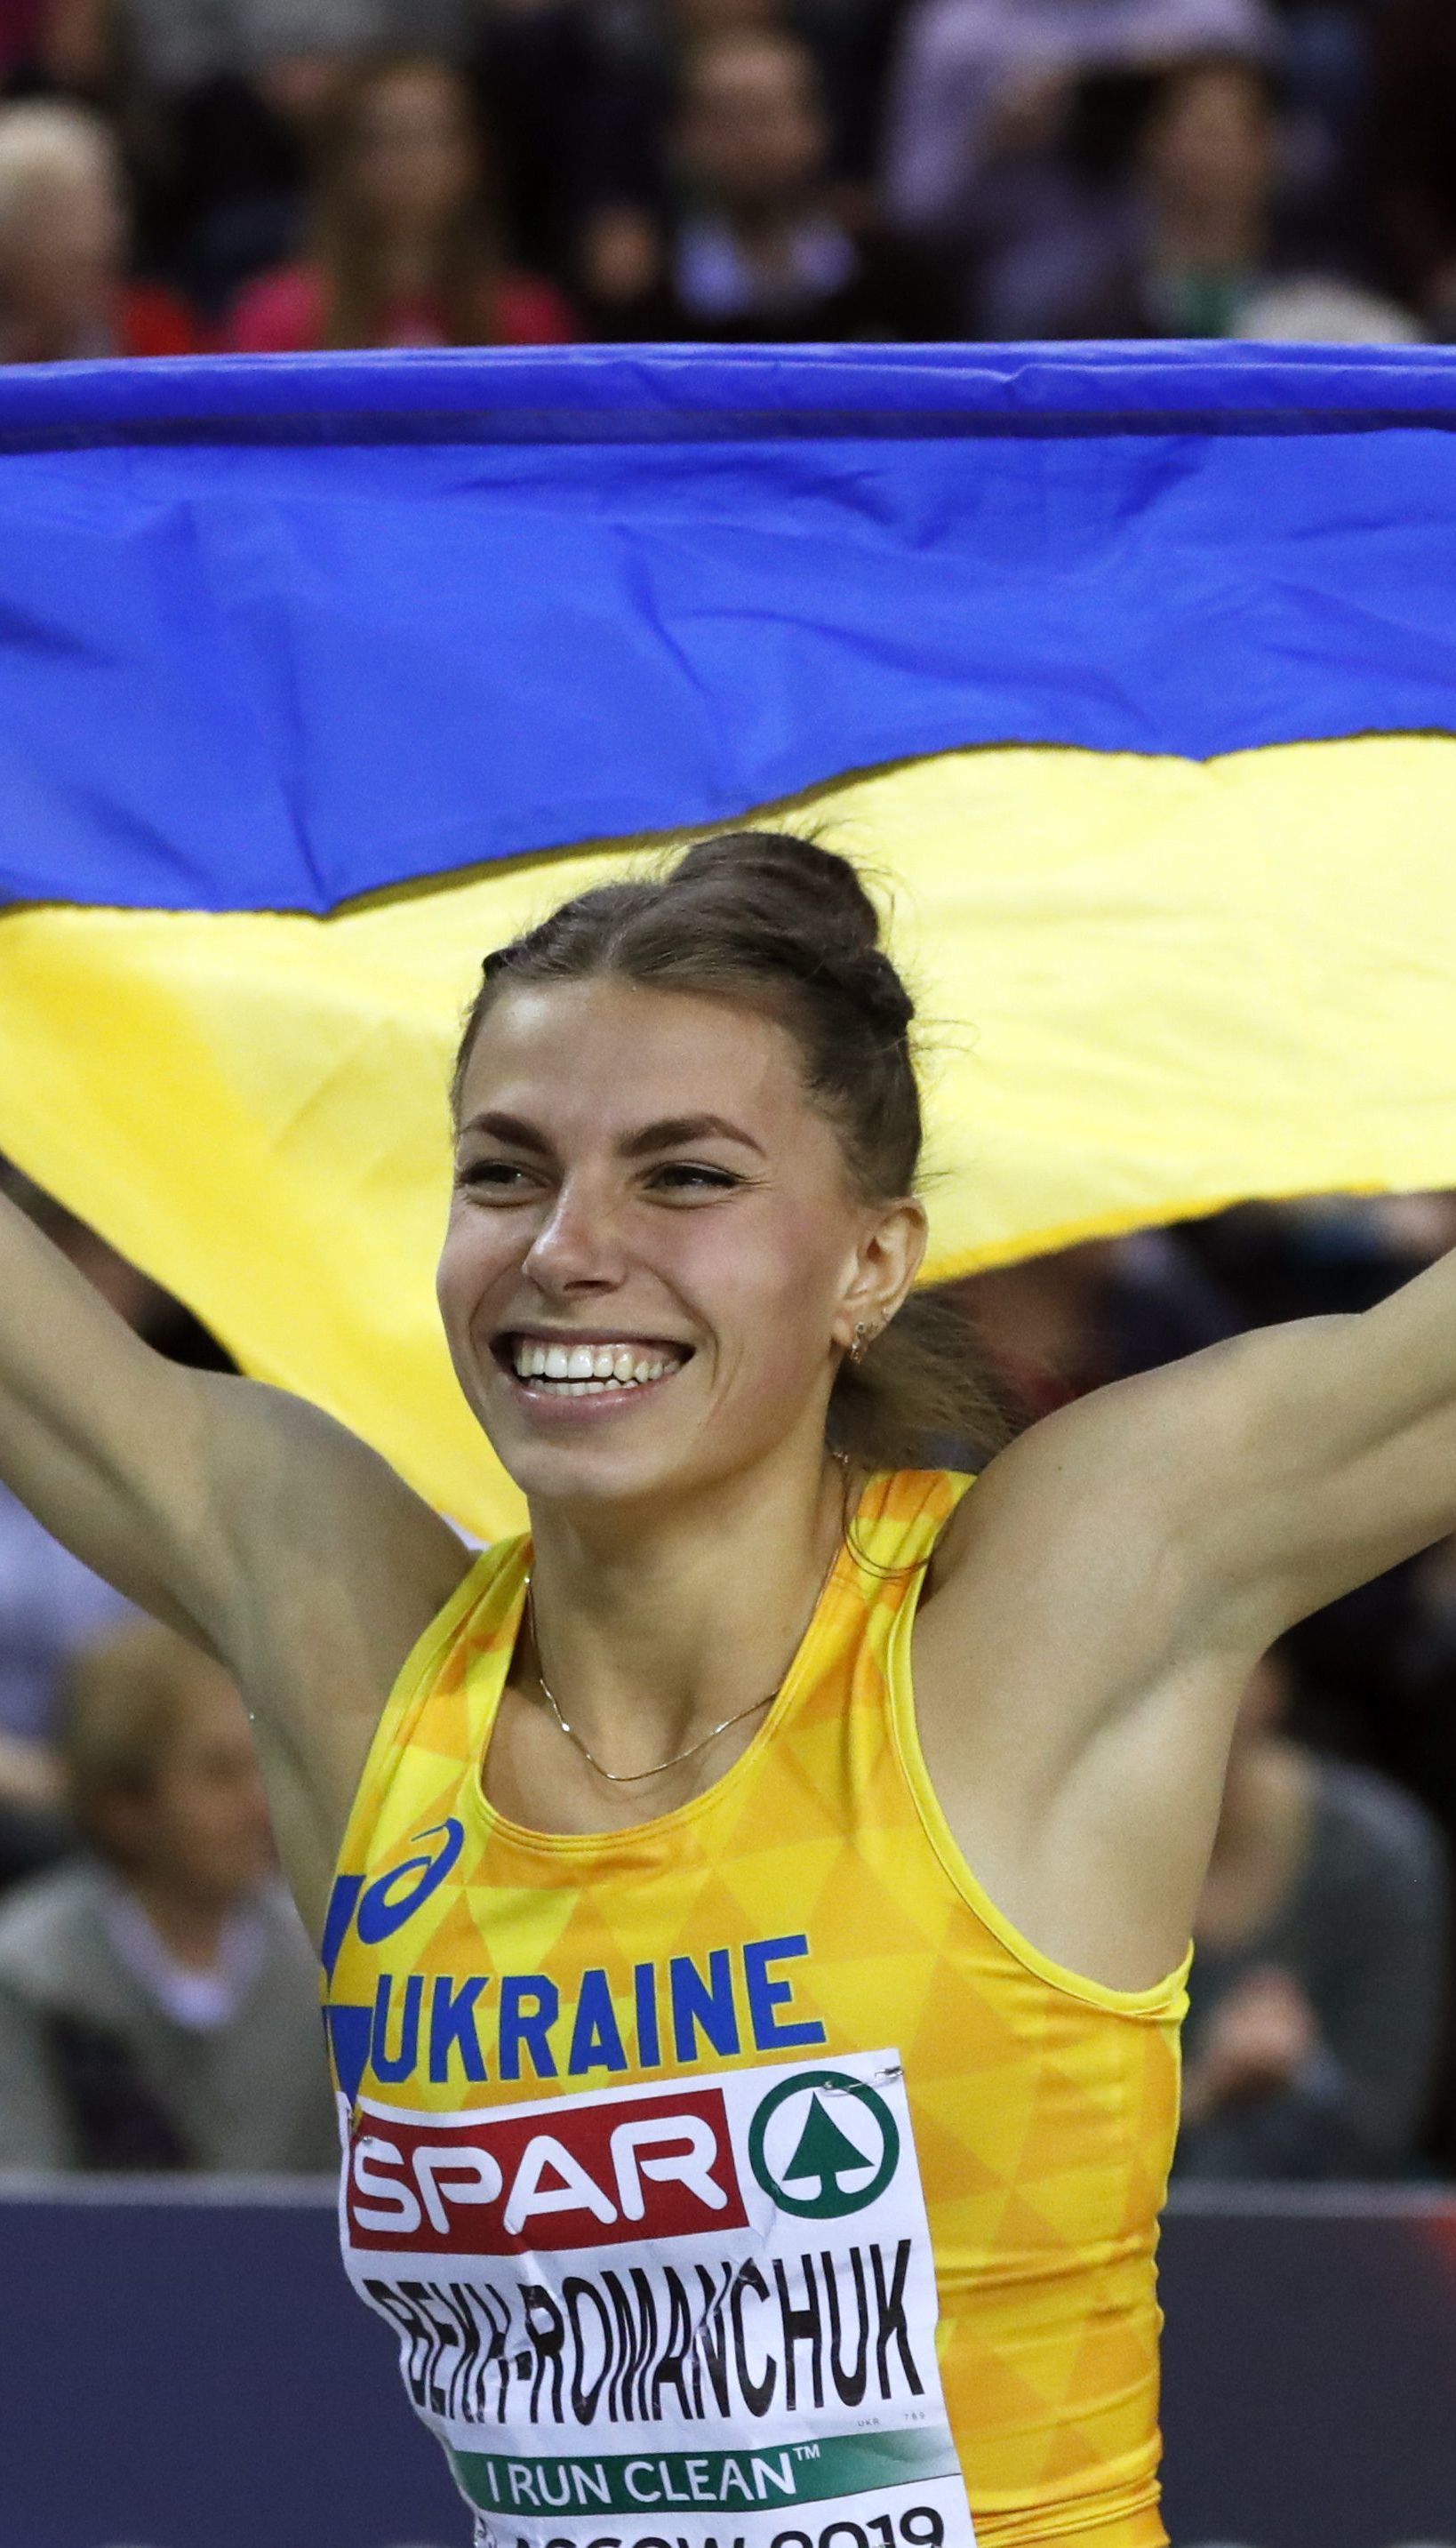 178 спортсменов представят Украину на 30-й летней Универсиаде в Неаполе